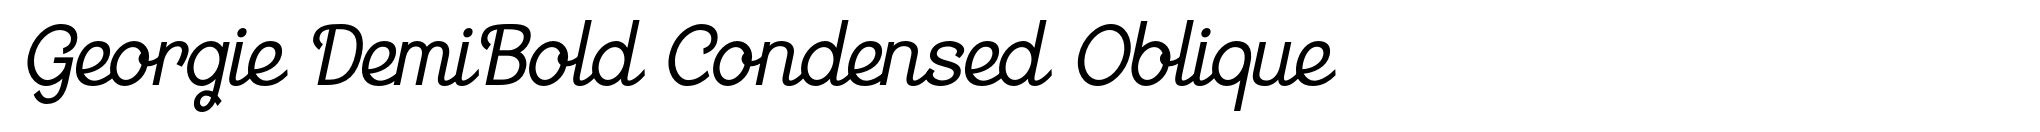 Georgie DemiBold Condensed Oblique image